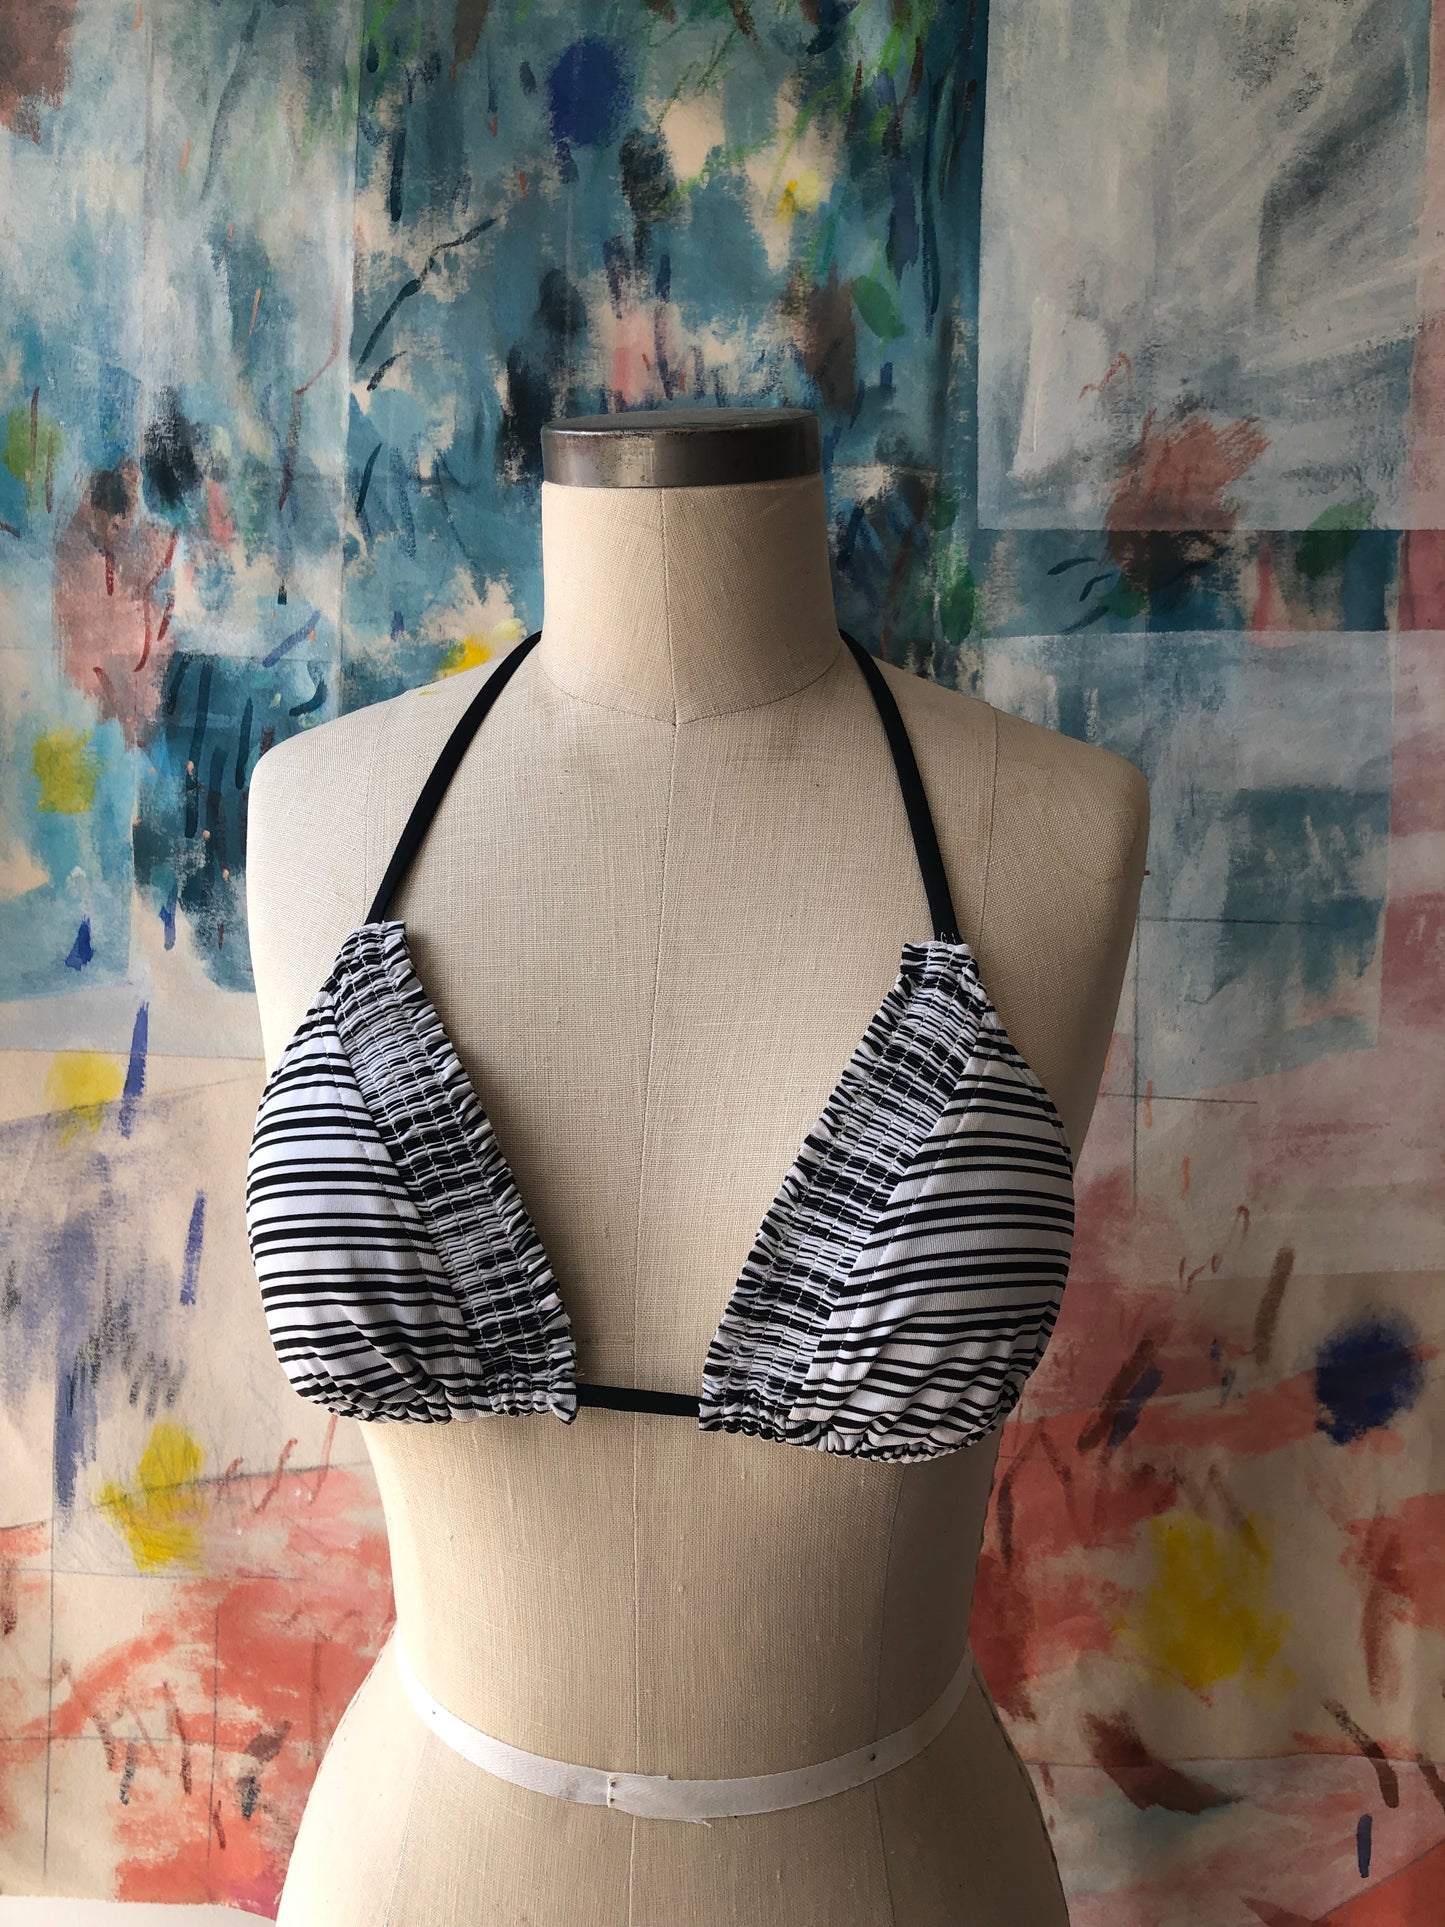 Black and white striped bikini top size small